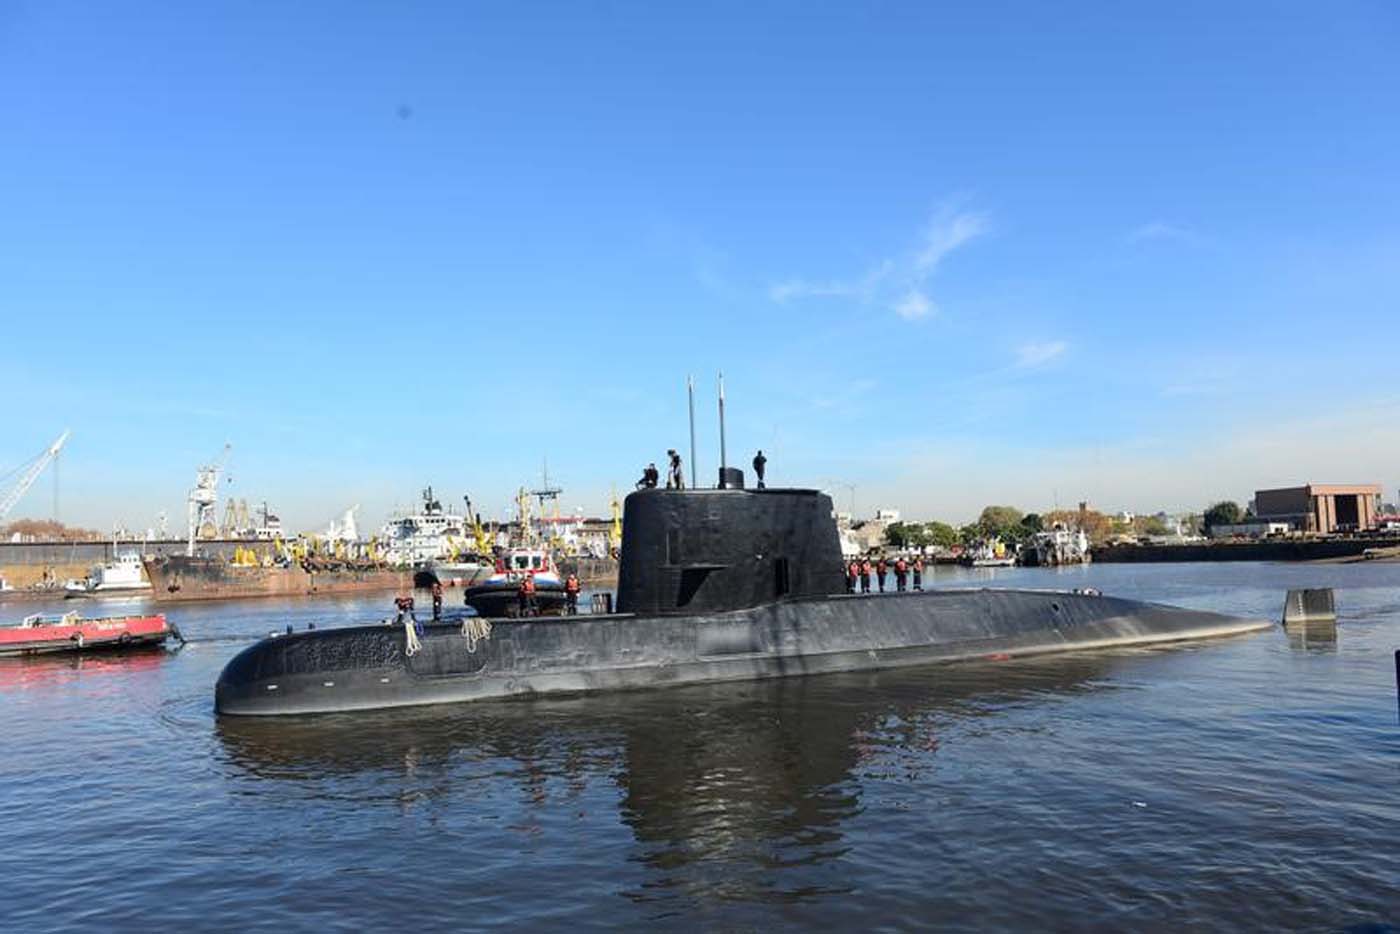 Cinco tripulantes del submarino perdido en Argentina son árbitros de fútbol